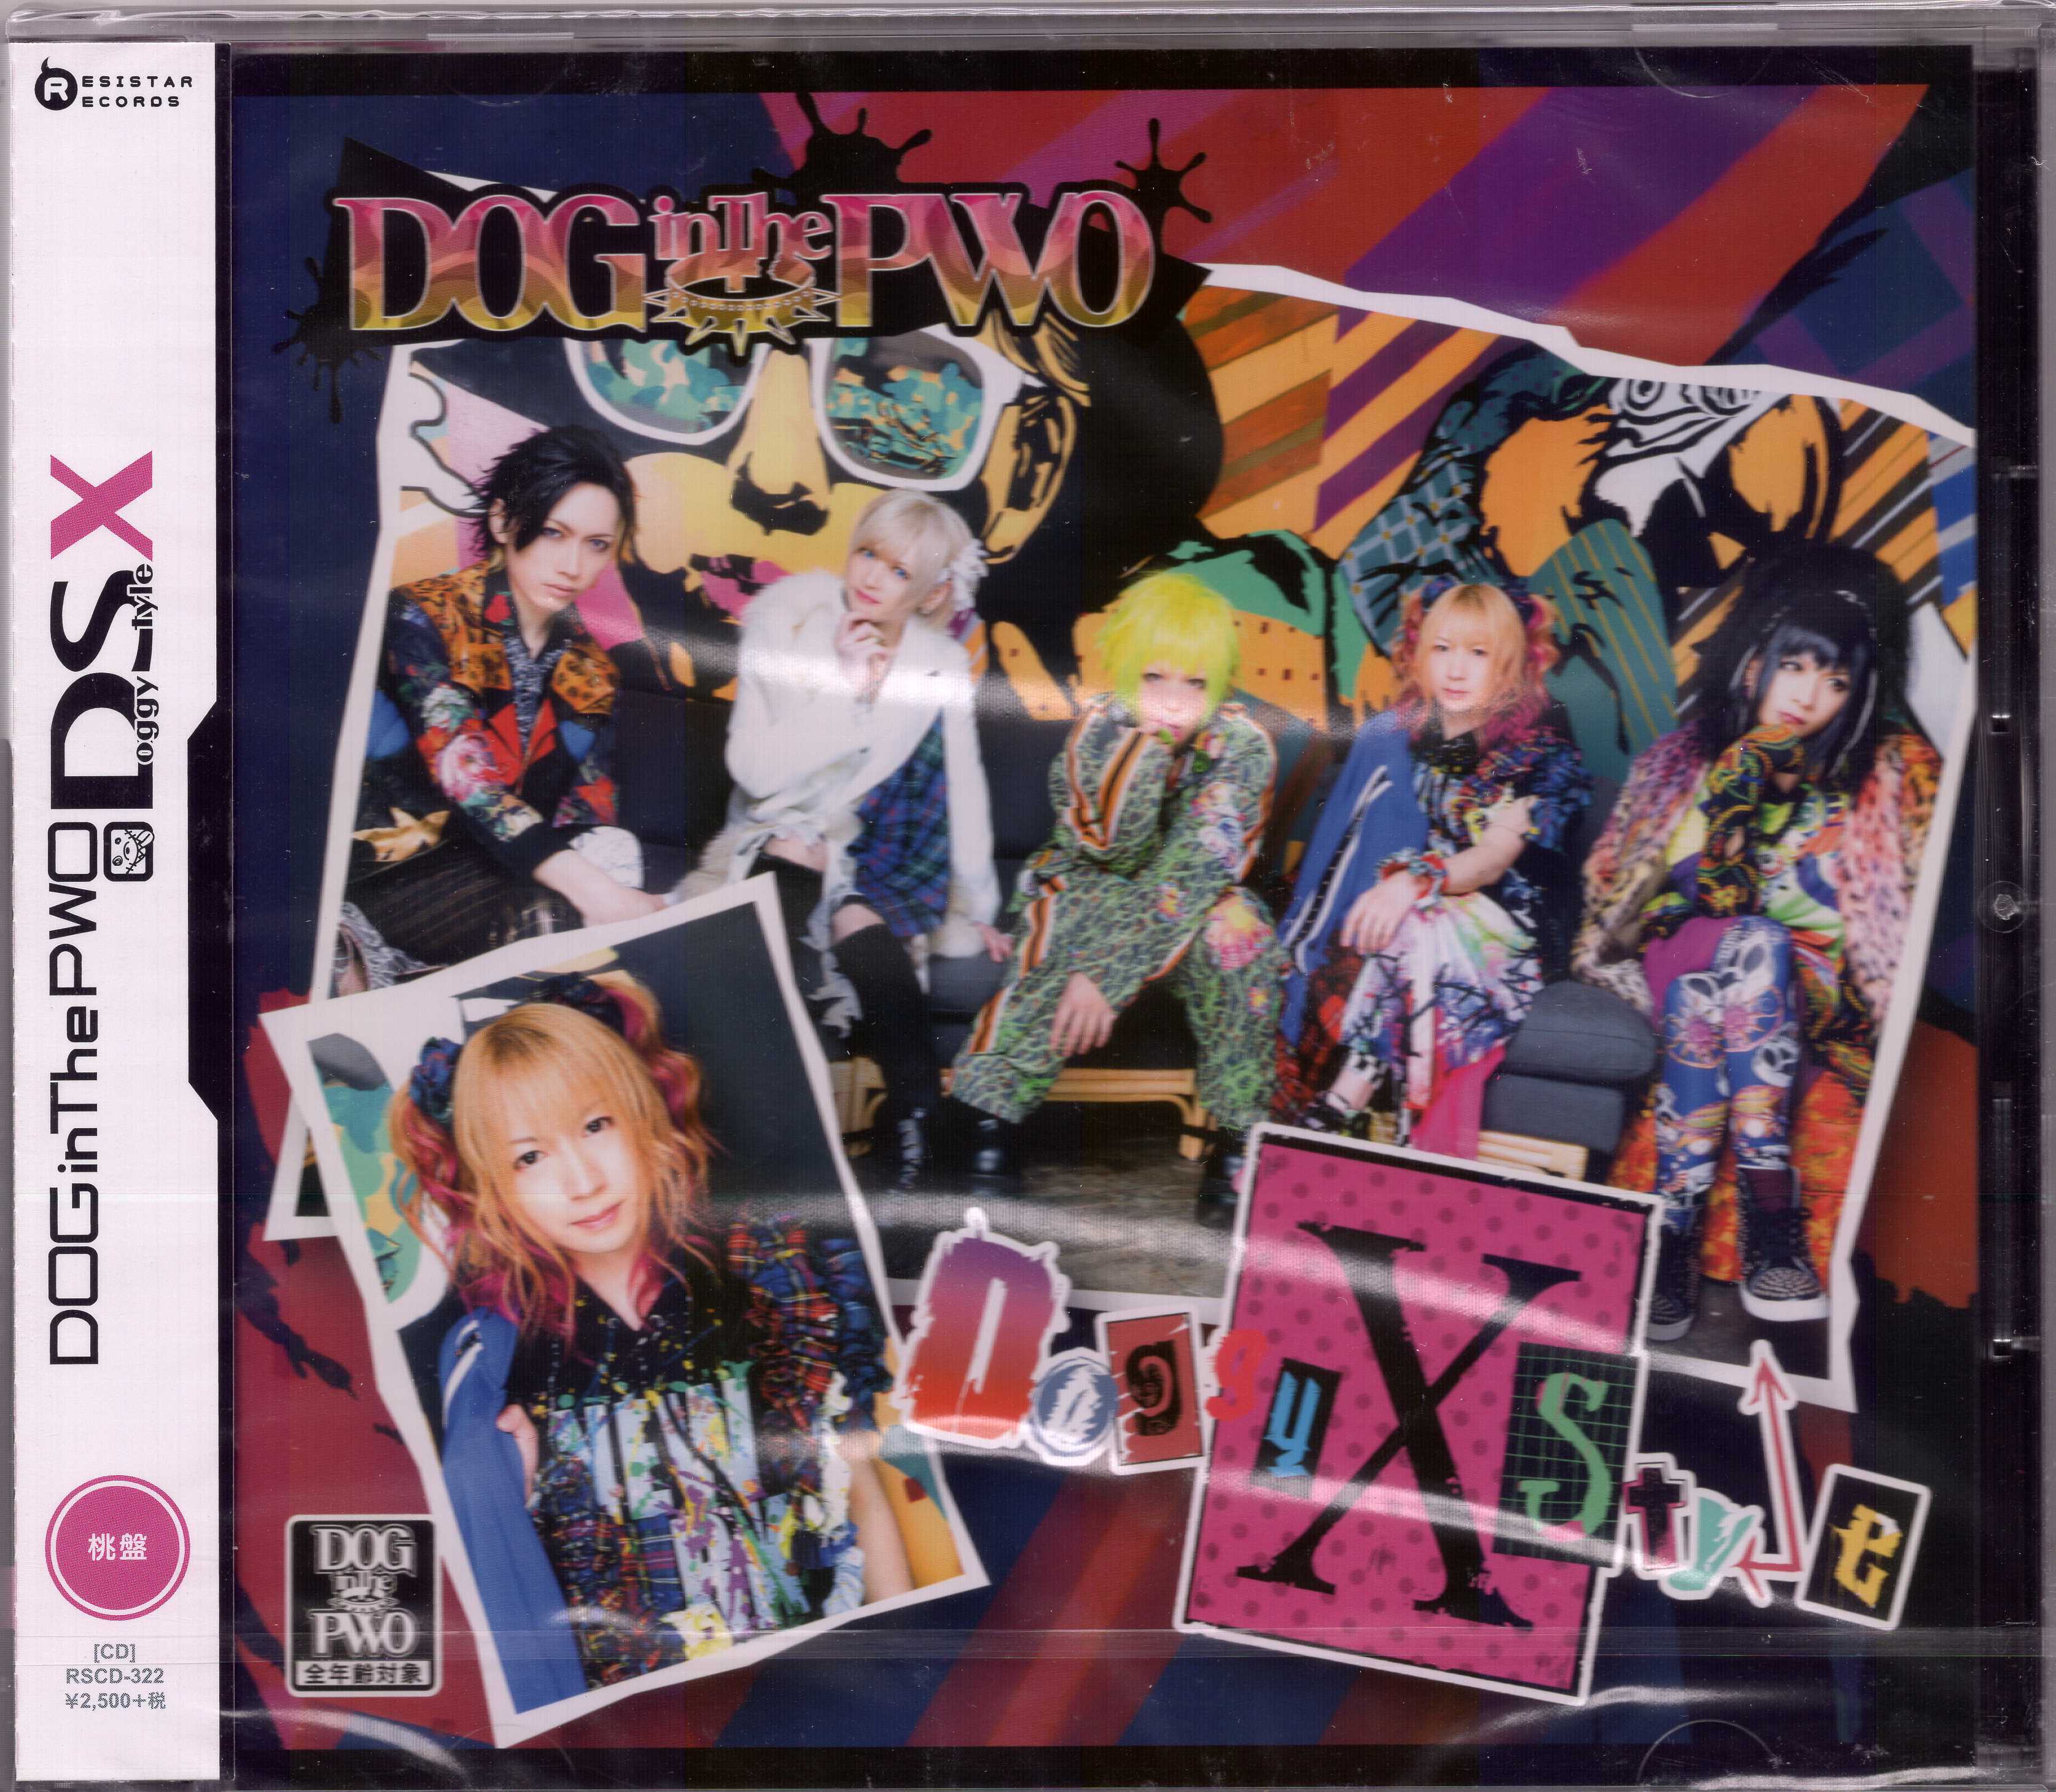 ドッグインザパラレルワールドオーケストラ の CD 【桃盤】Doggy StyleX